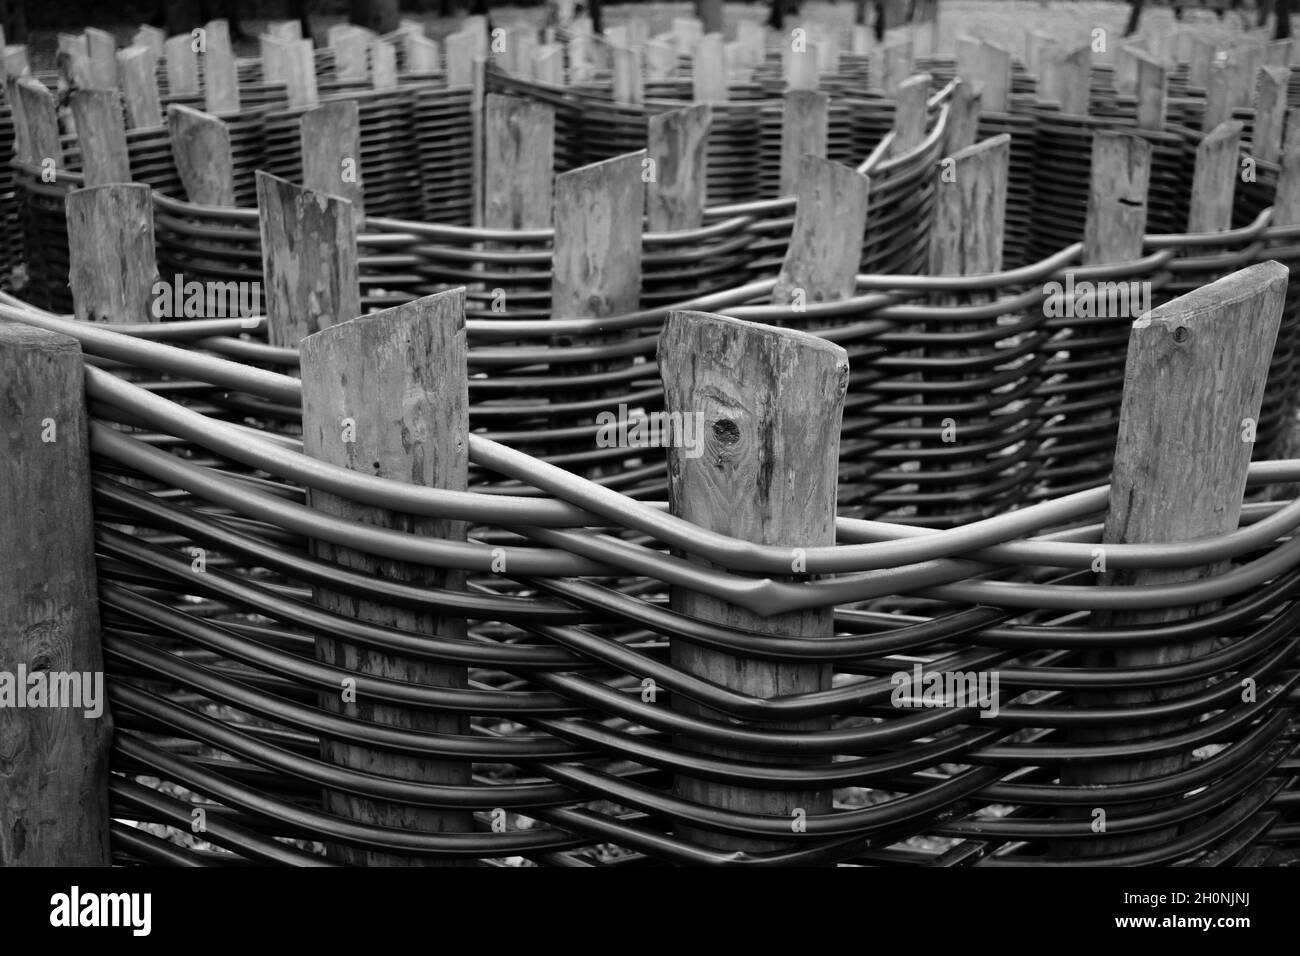 Fuoco selettivo sui pali di recinzione in legno dei tubi di plastica intrecciati. Tubi idraulici in polipropilene in design paesaggistico. Sfondo astratto. Immagine in bianco e nero. Foto Stock